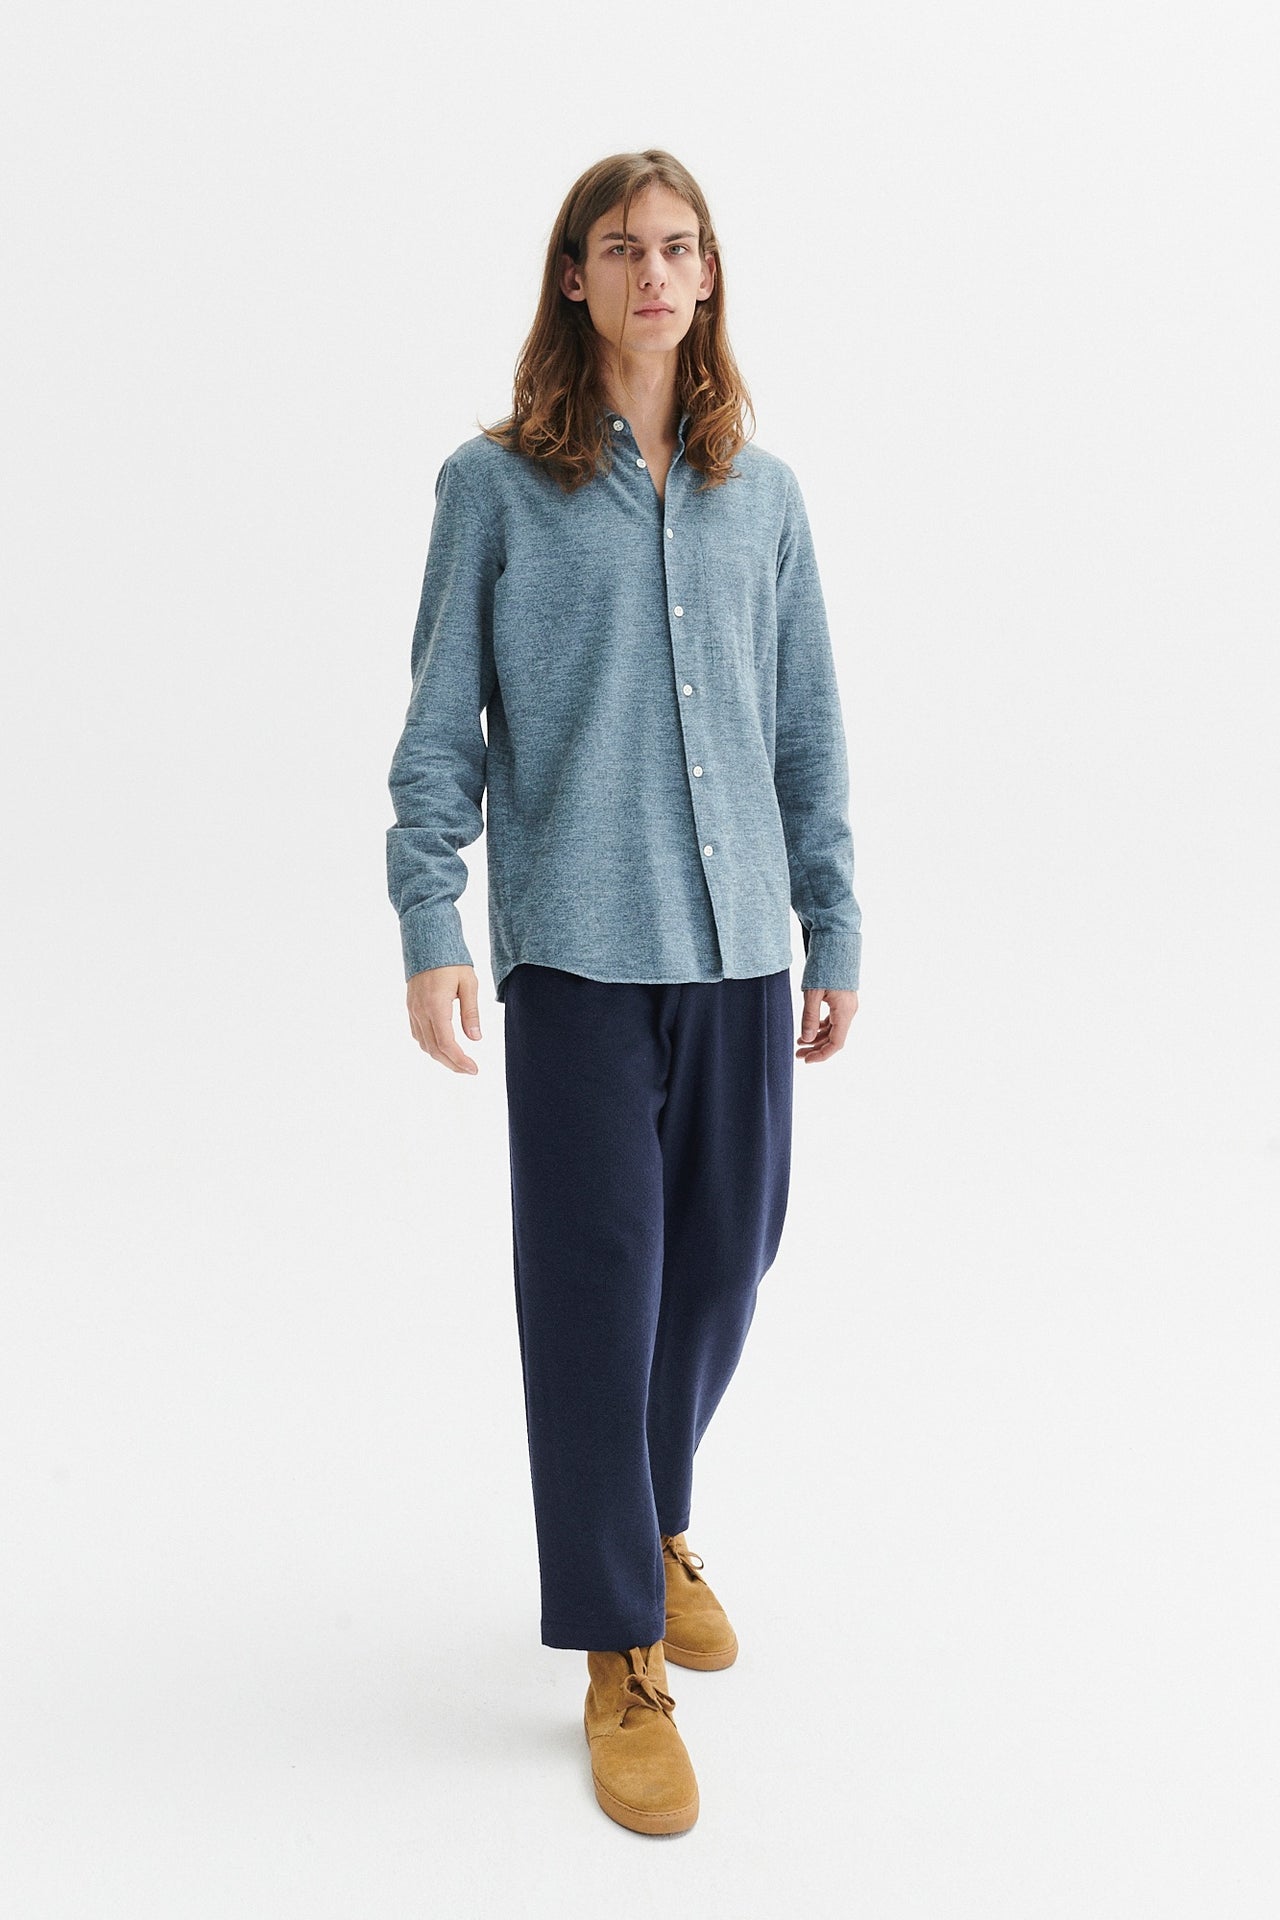 Feel Good Shirt in a Blue Utterly Soft Melange Flannel